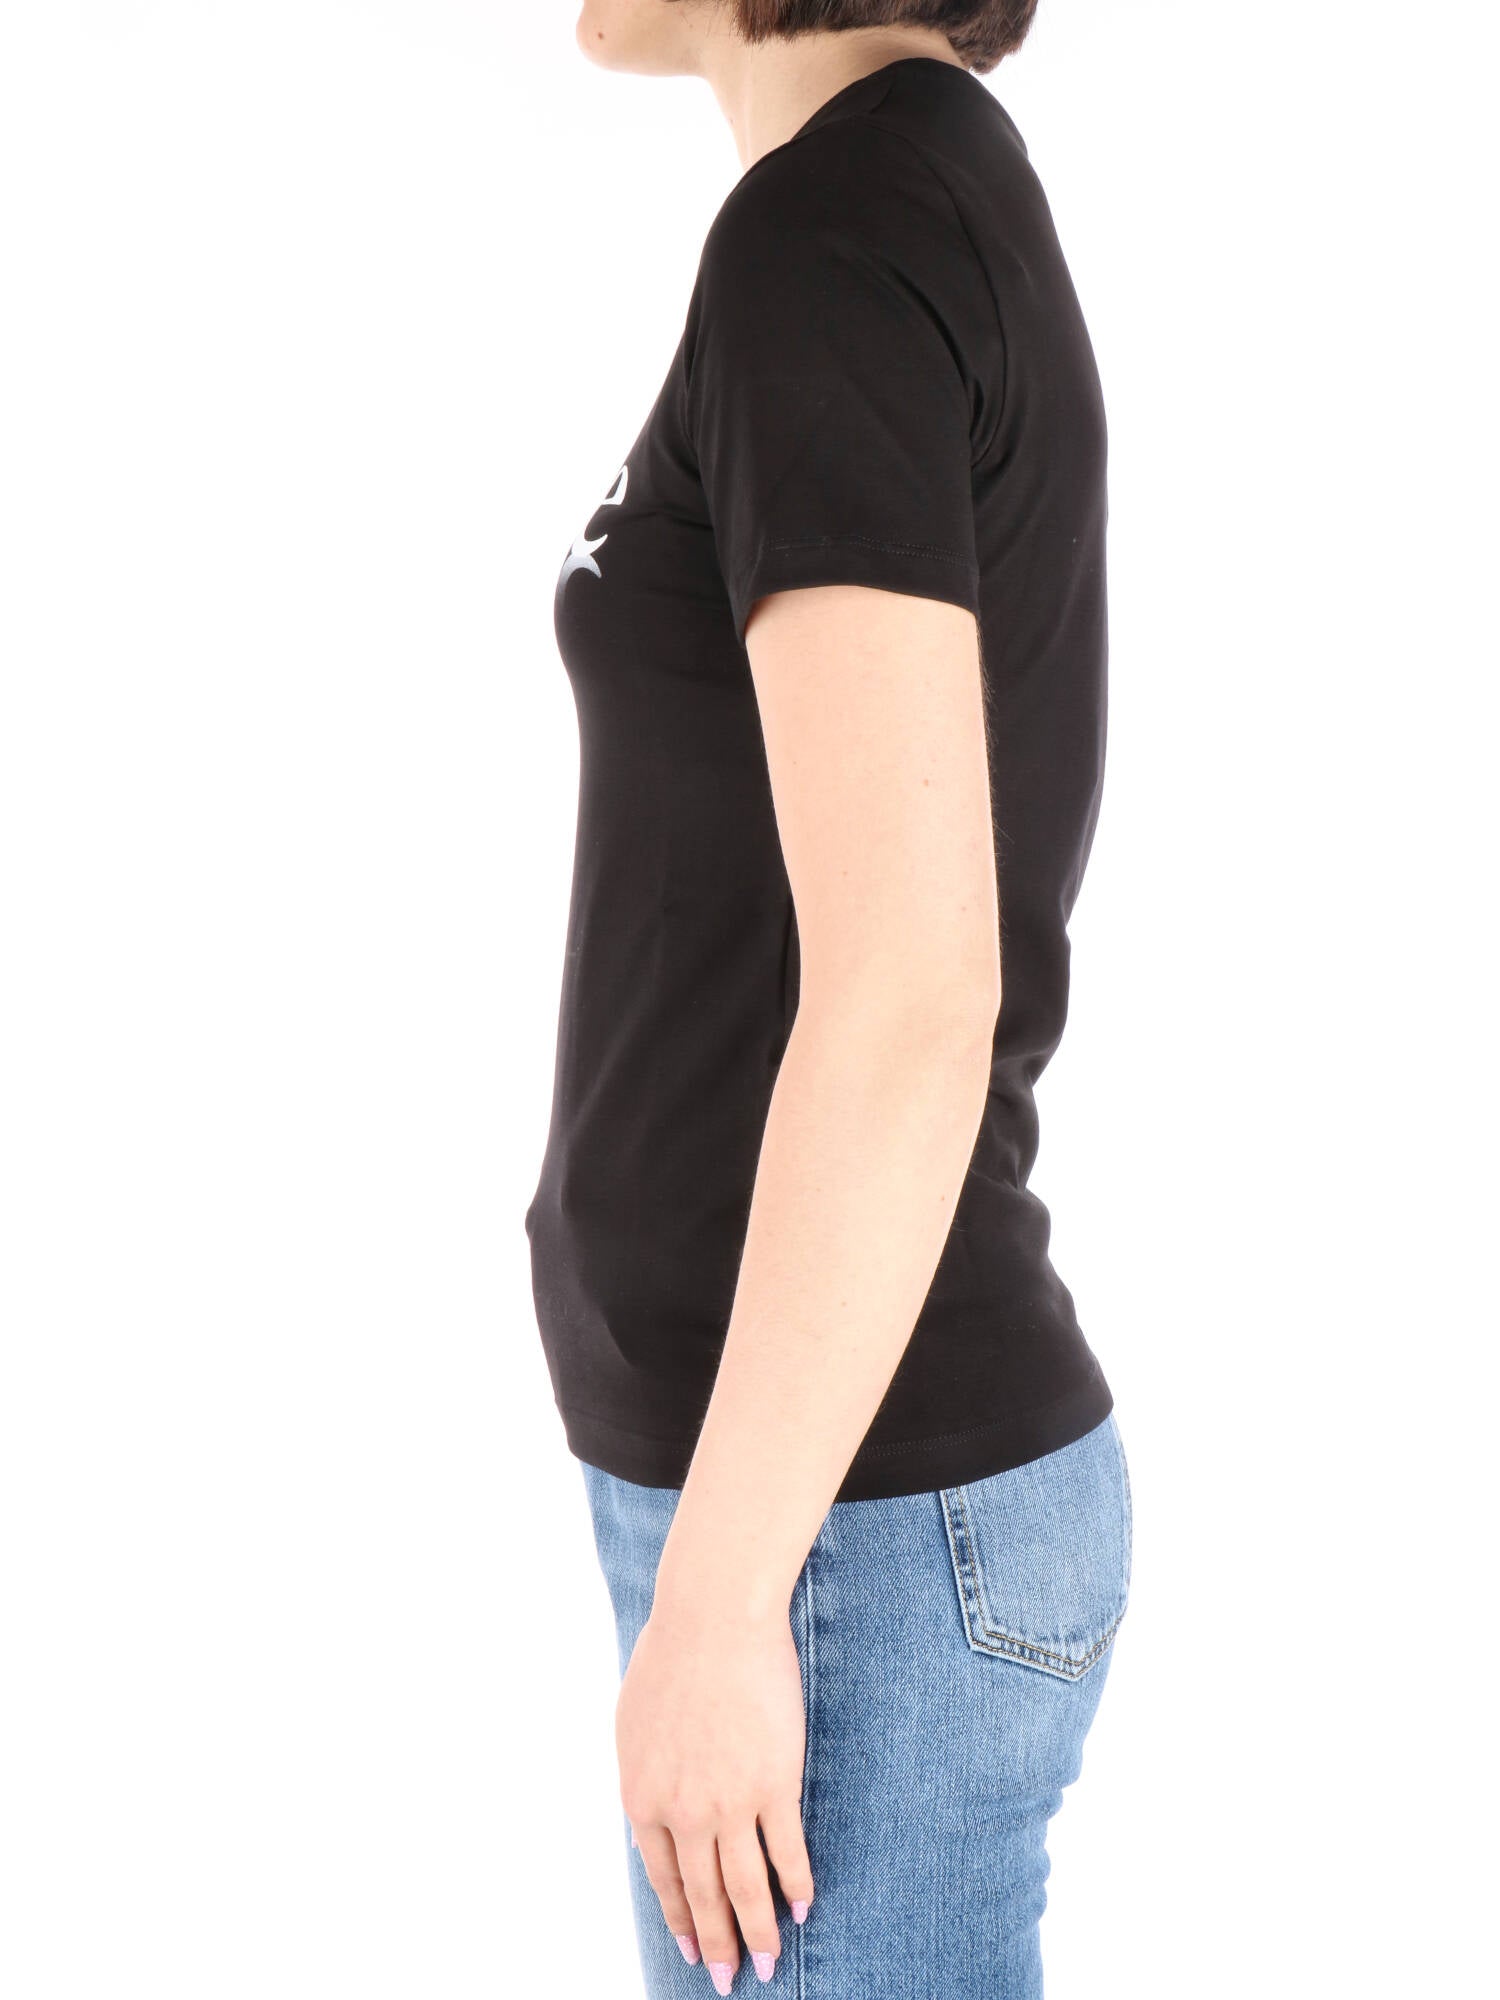 Gaelle Paris t-shirt nera con stampa